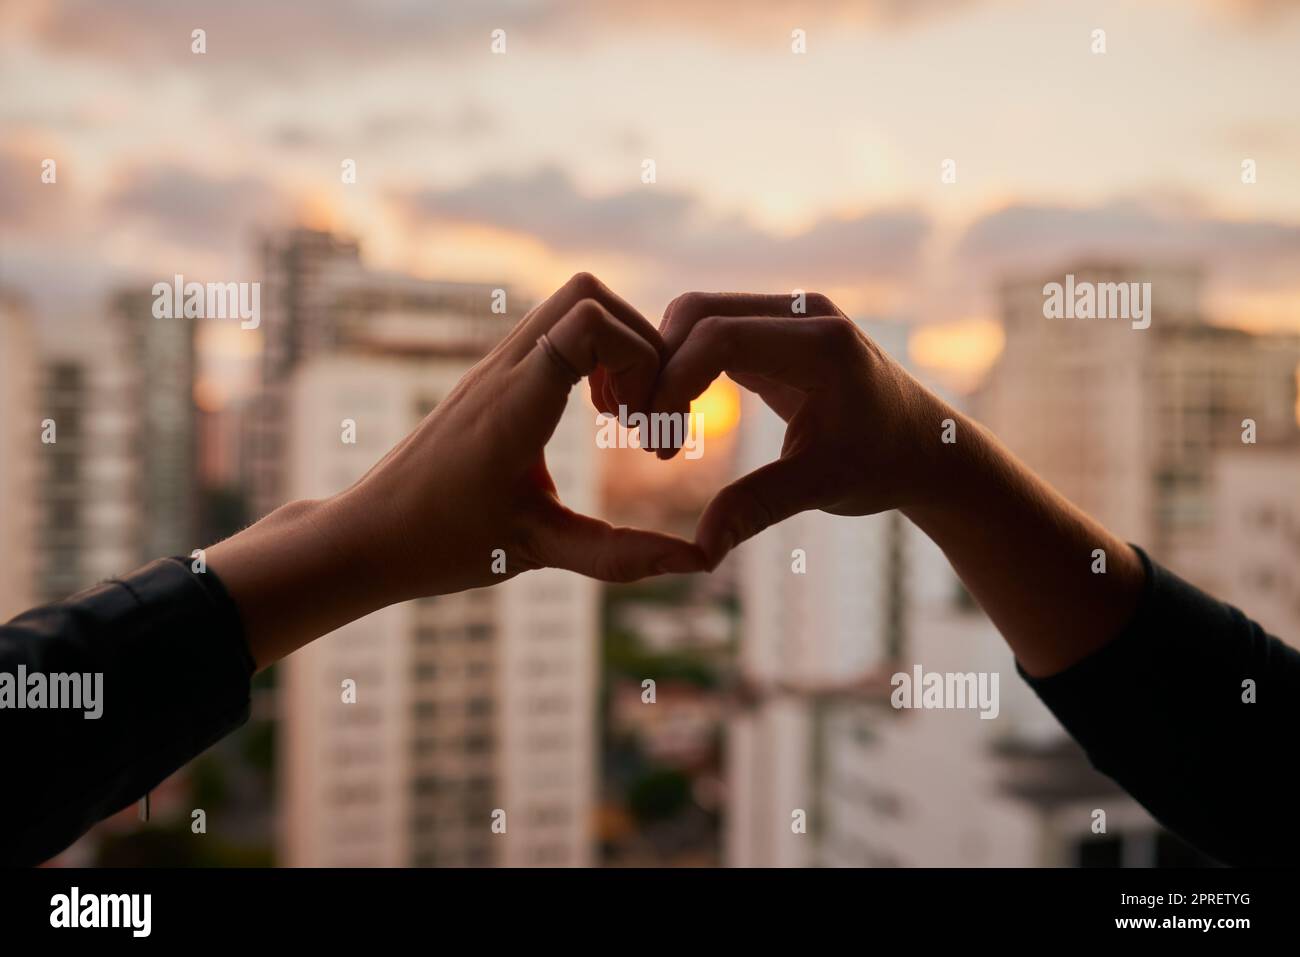 Wir lieben diese Stadt. Ein unverkennbares Paar, das mit den Händen vor einem Stadthintergrund eine Herzform macht. Stockfoto